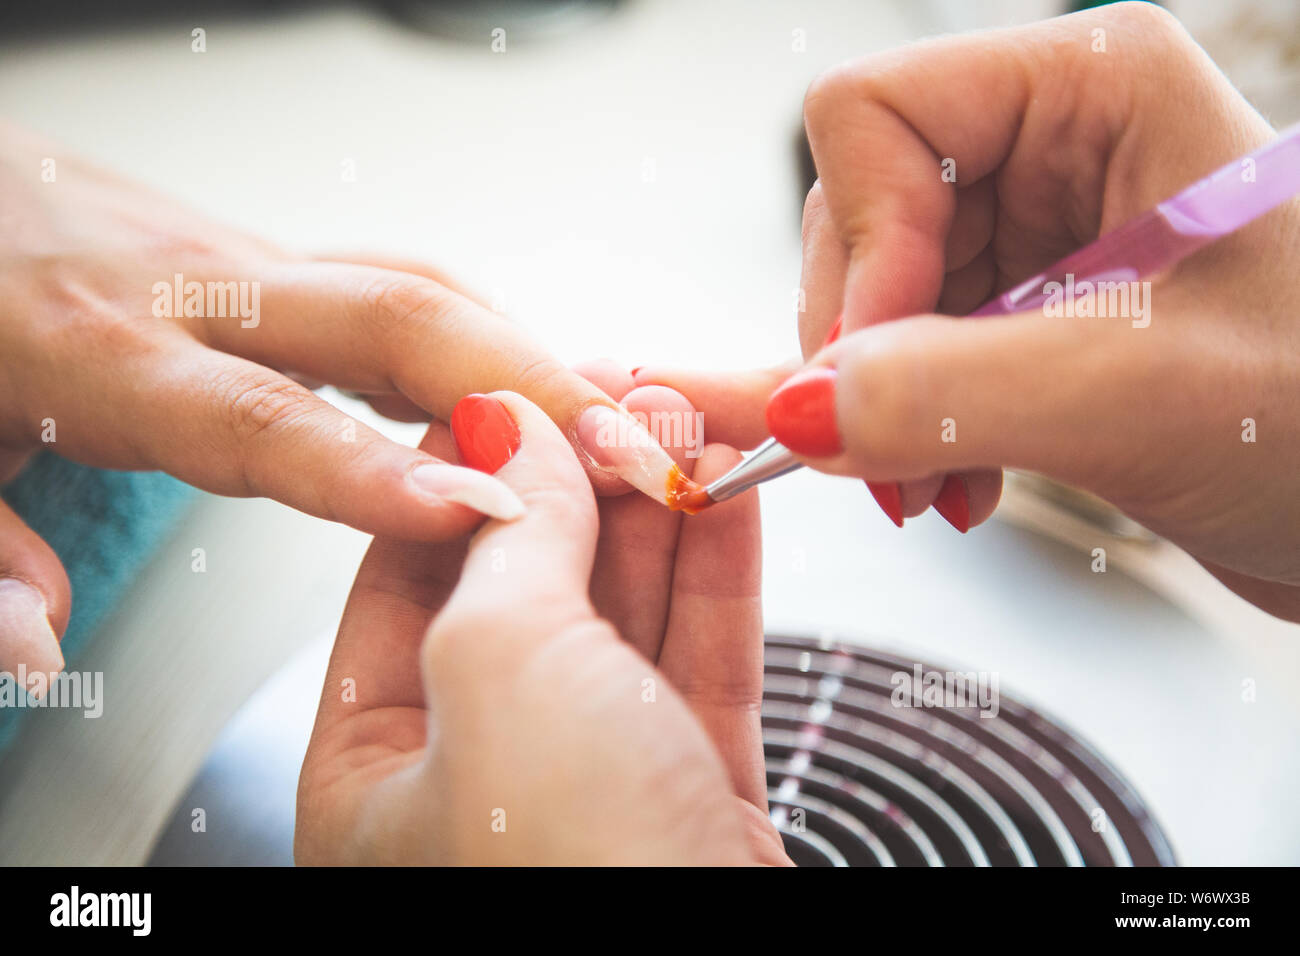 Libre de manucure nail polish Gel s'applique sur le doigt. Girl client détient la main sur le client sur une serviette. Services manucurés doucement coiffeur Banque D'Images